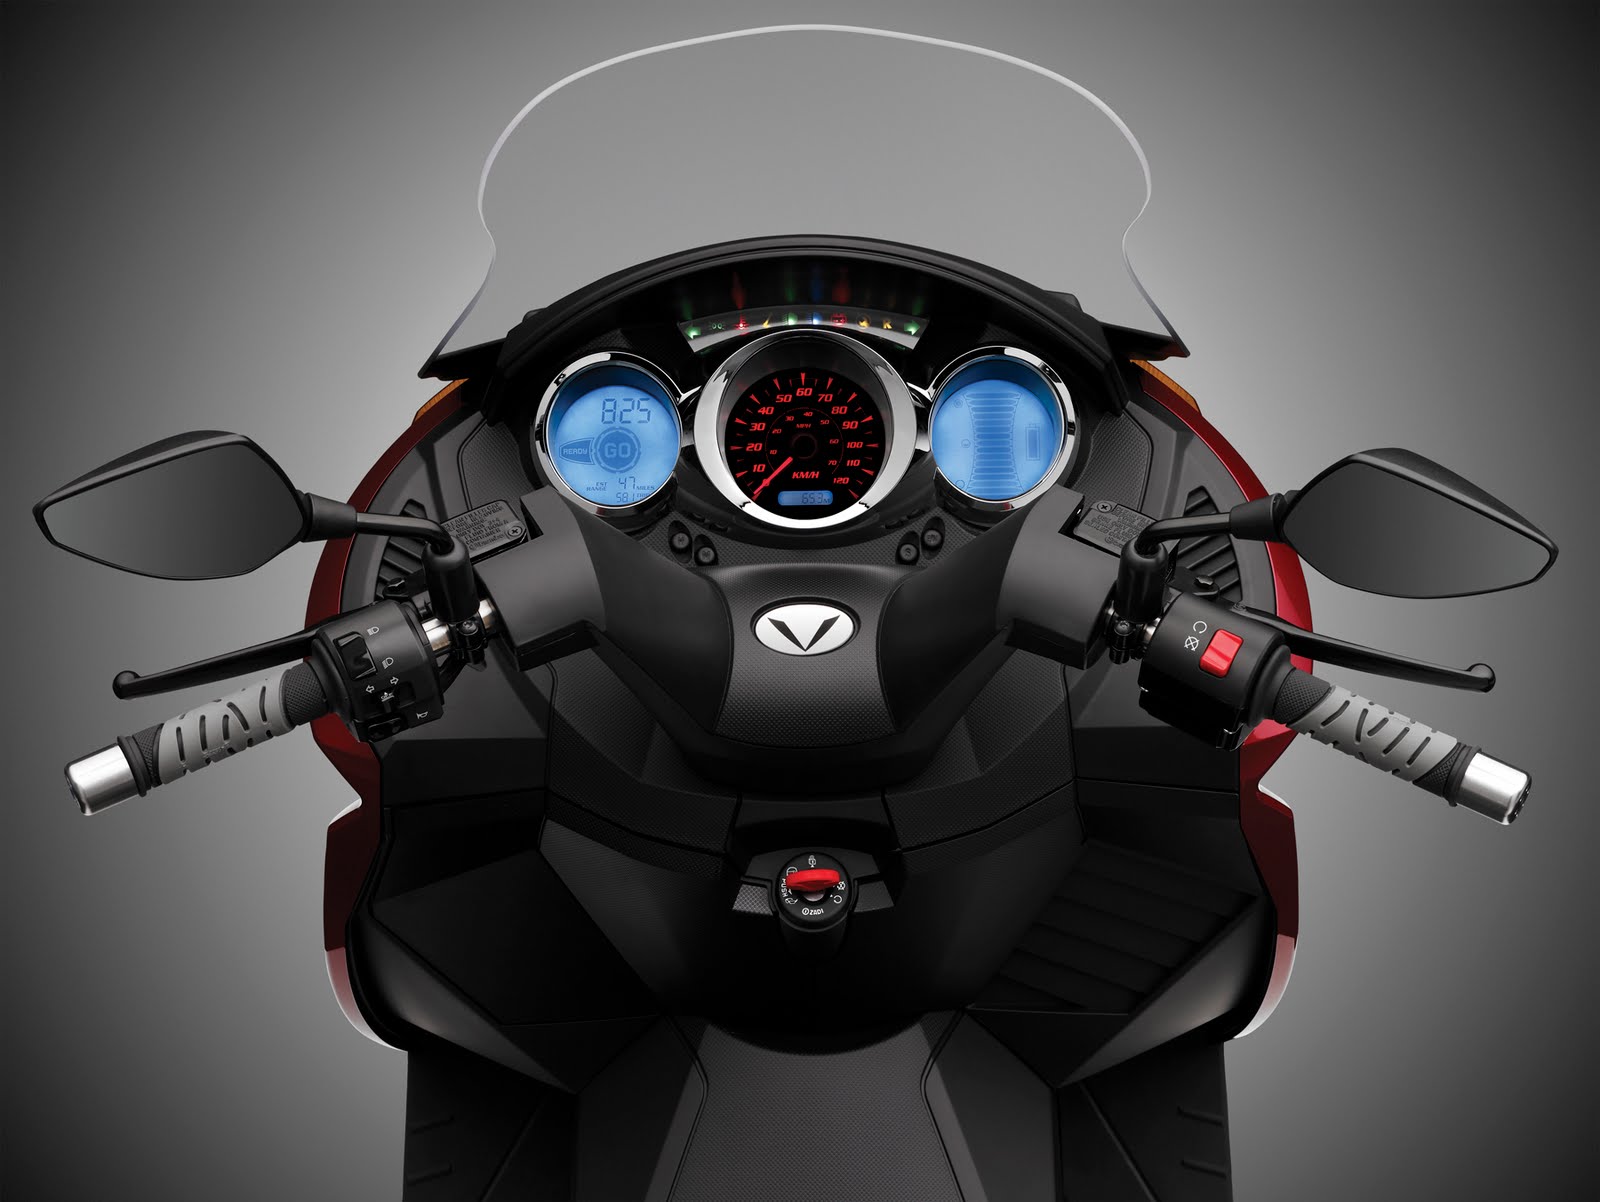 ¿Una moto electrica de 30 CV? Copia+de+Vectrix_Dashboard